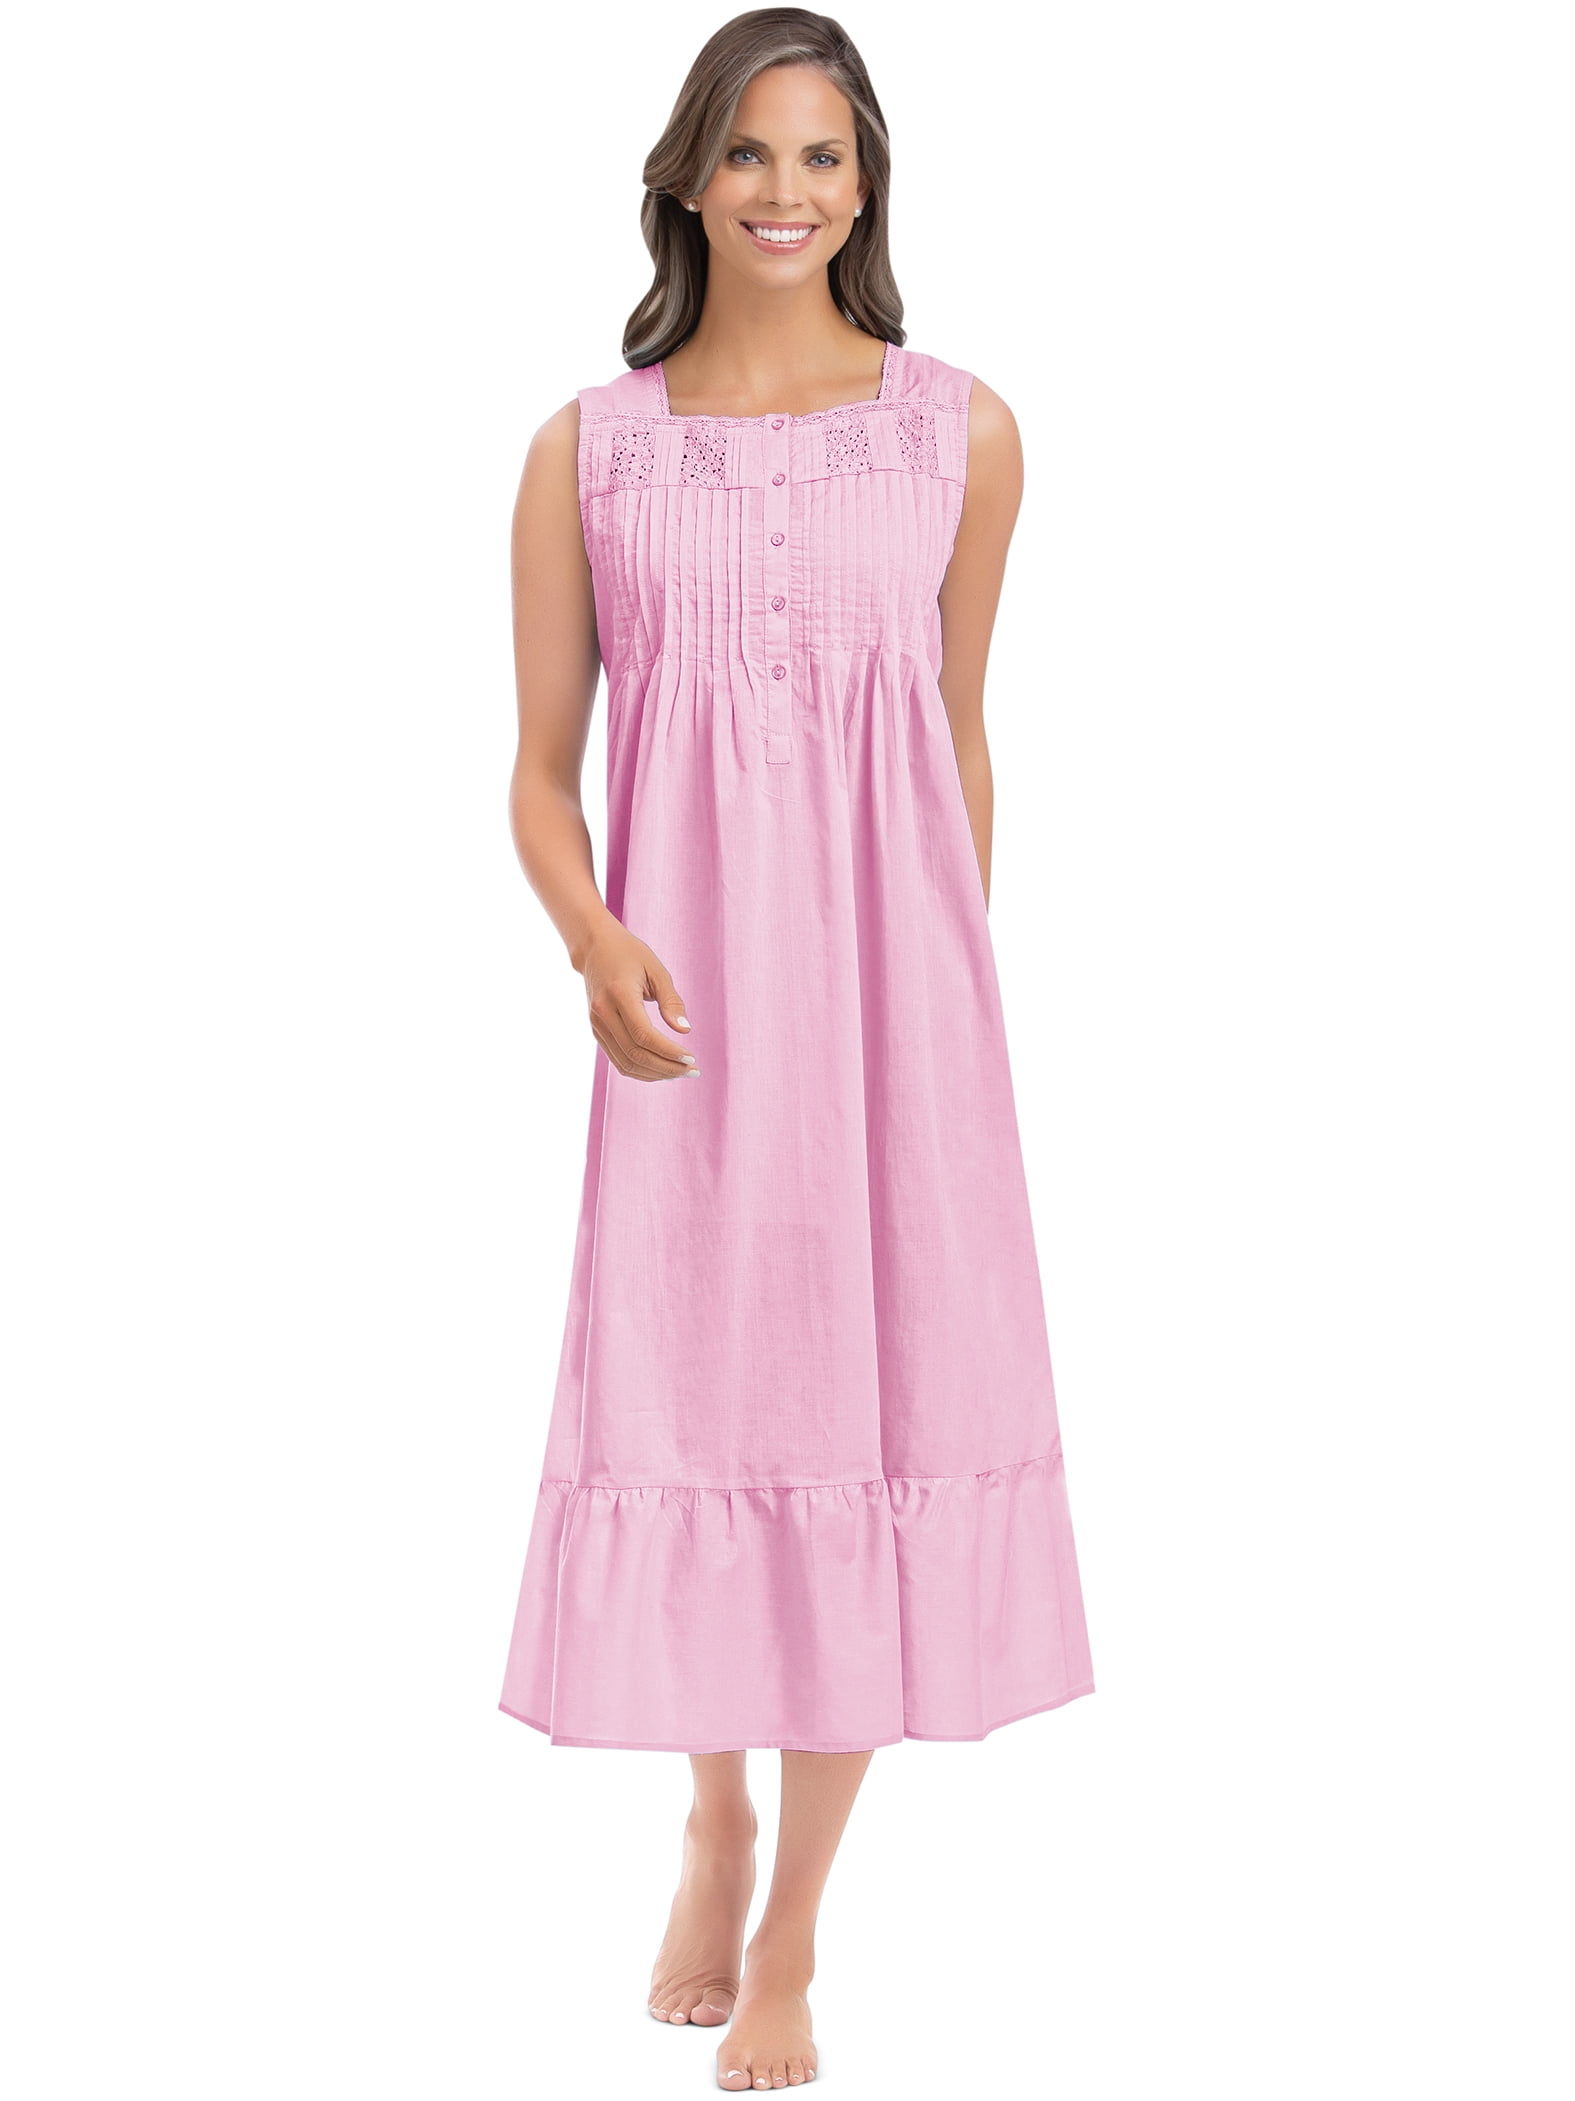 Rene Rofe Girls' 2-Pack Nightgowns